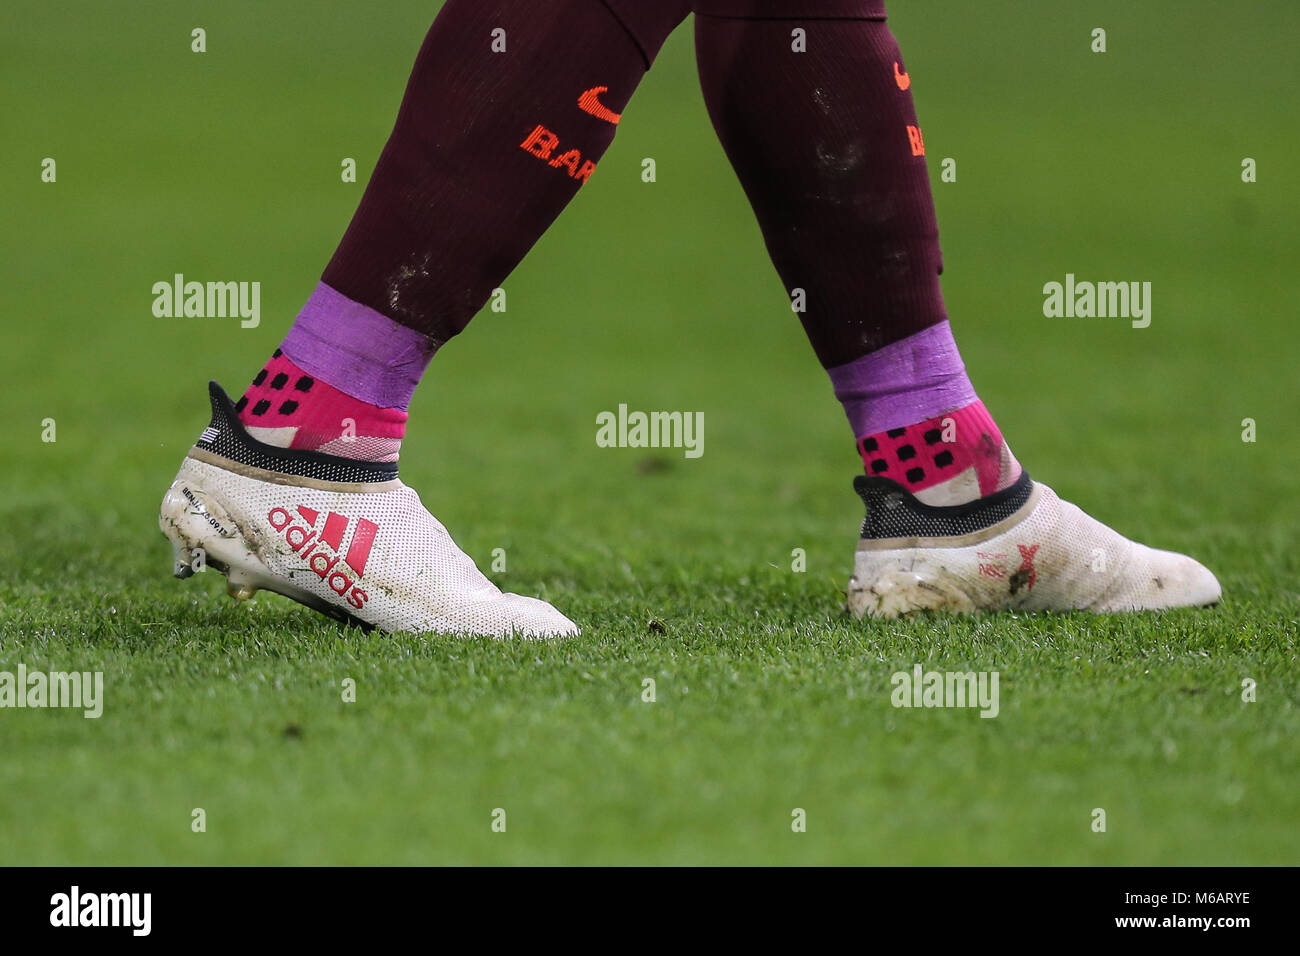 Los calcetines y las botas de Luis Suárez de Barcelona durante final de la UEFA Champions League entre Chelsea y Barcelona en Stamford Bridge, Londres, Engla Fotografía de stock Alamy